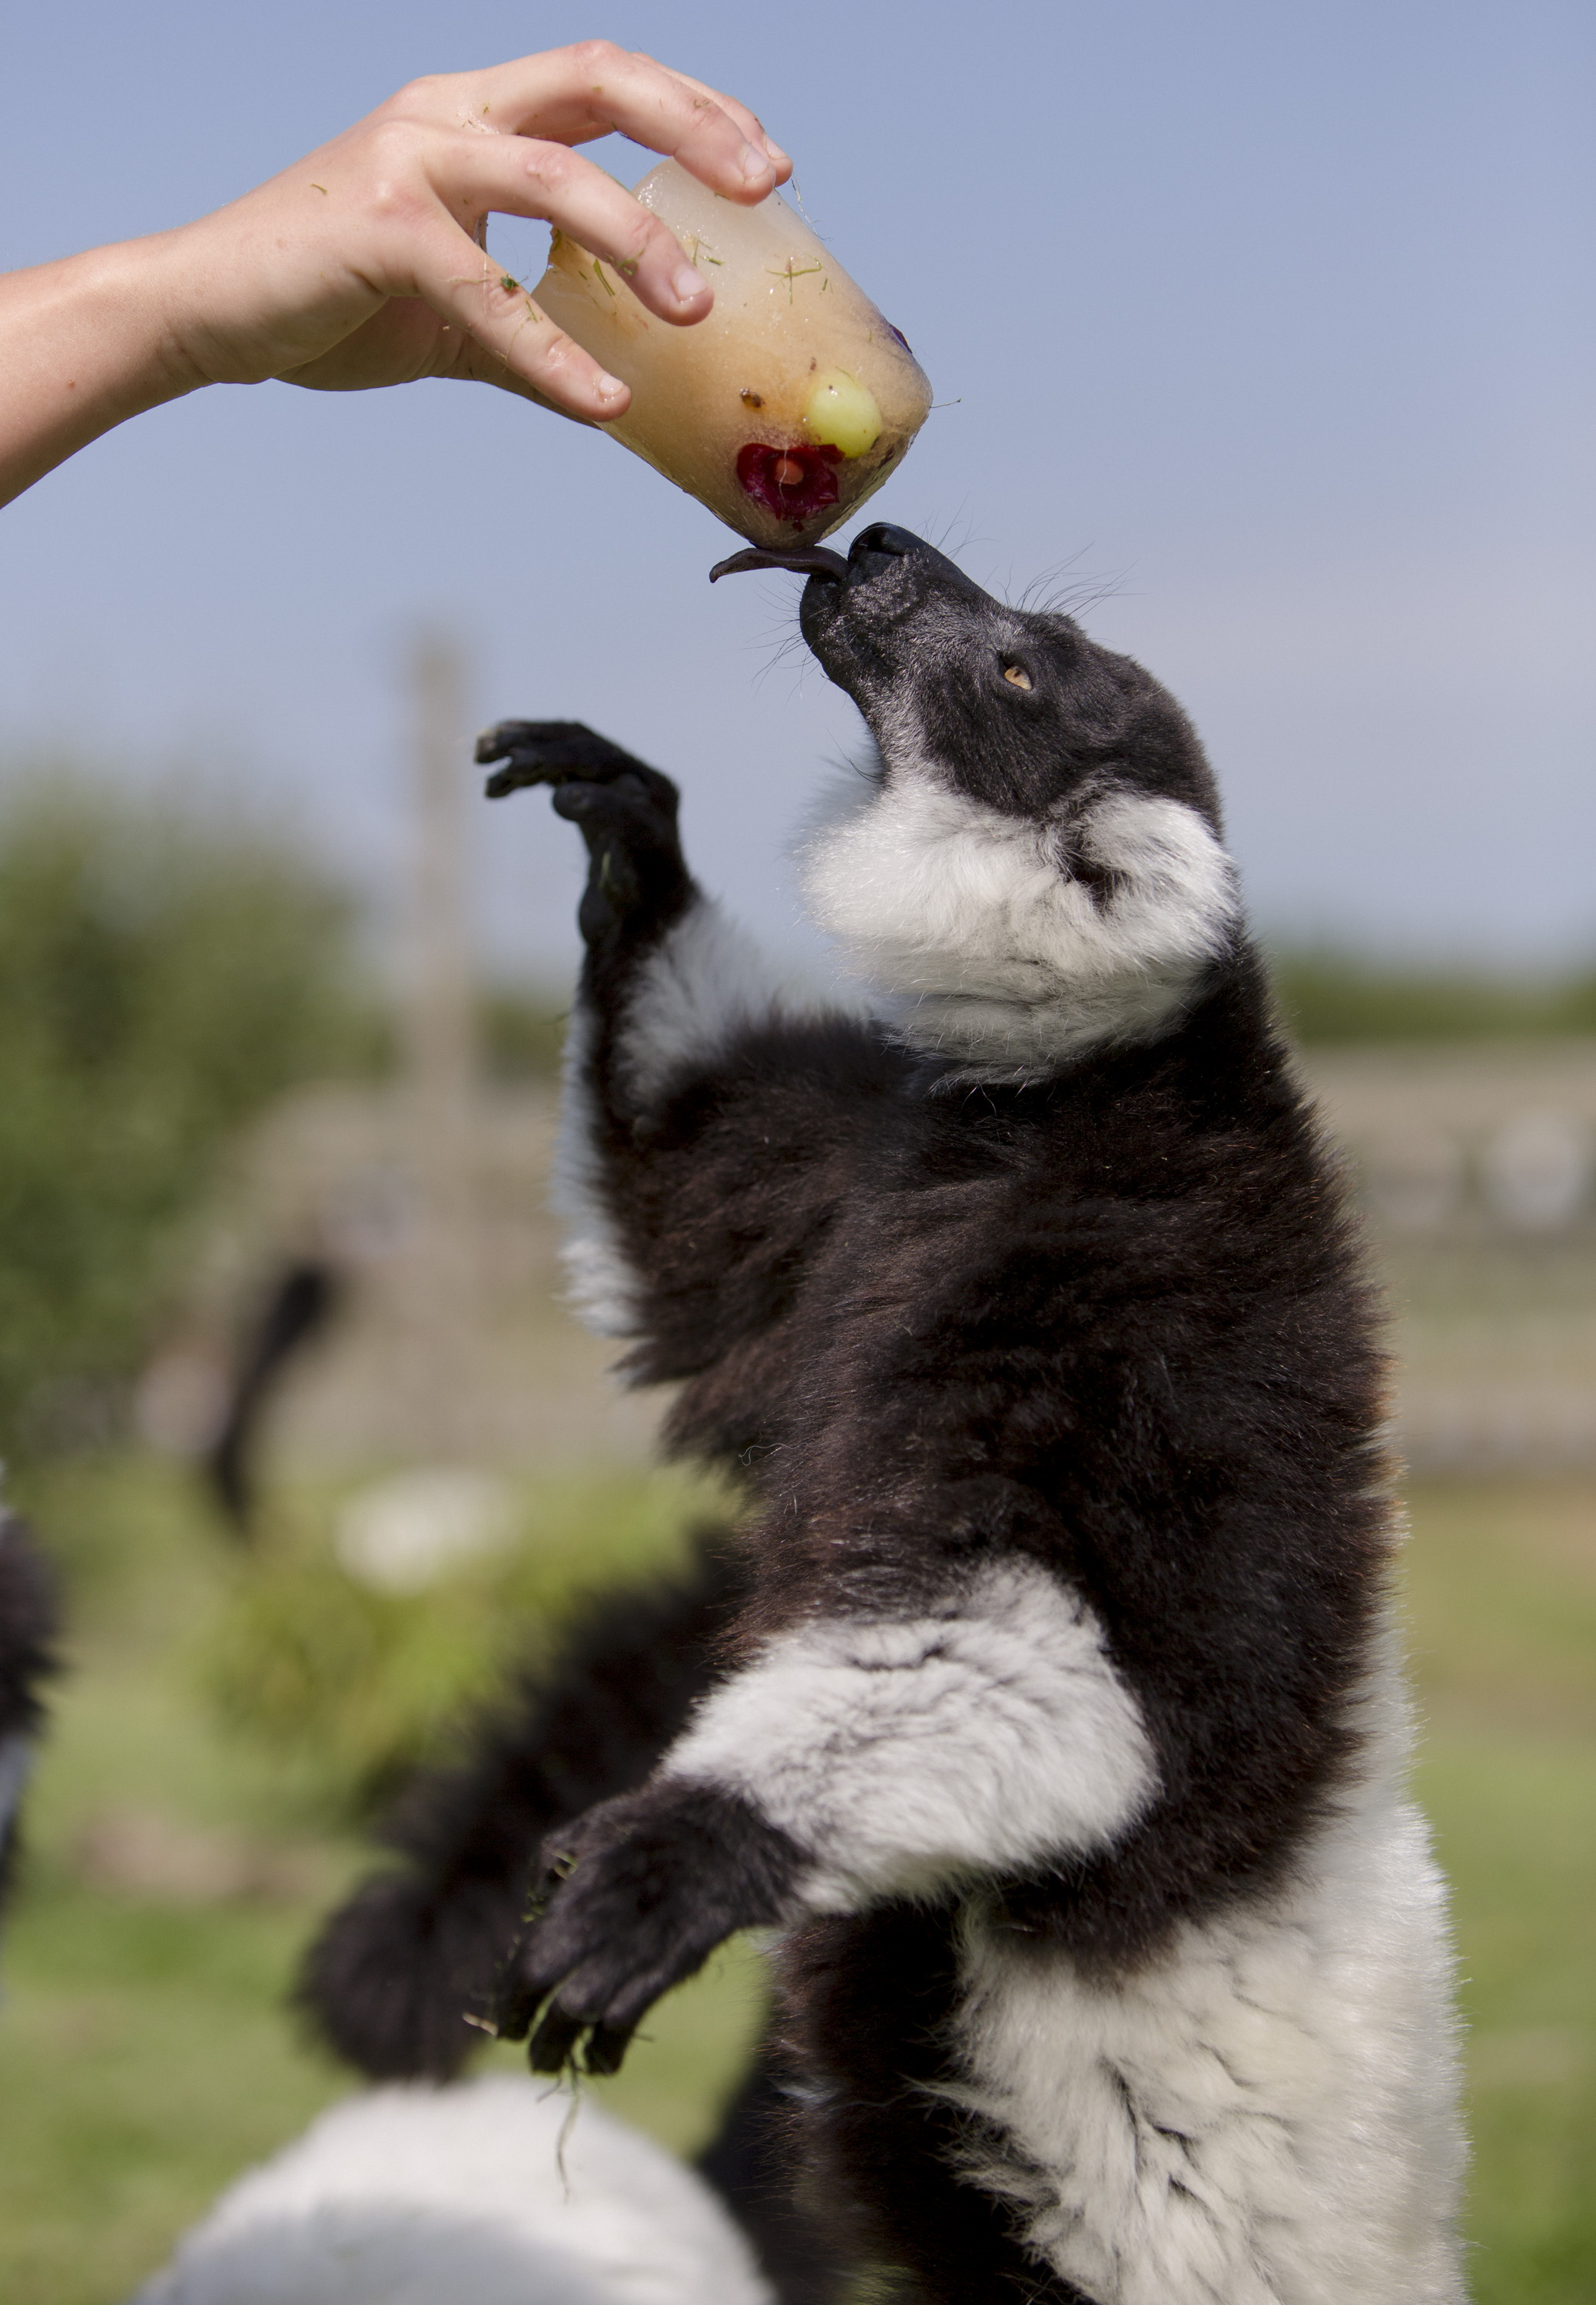 Lemur at Folly Farm licking an ice lolly